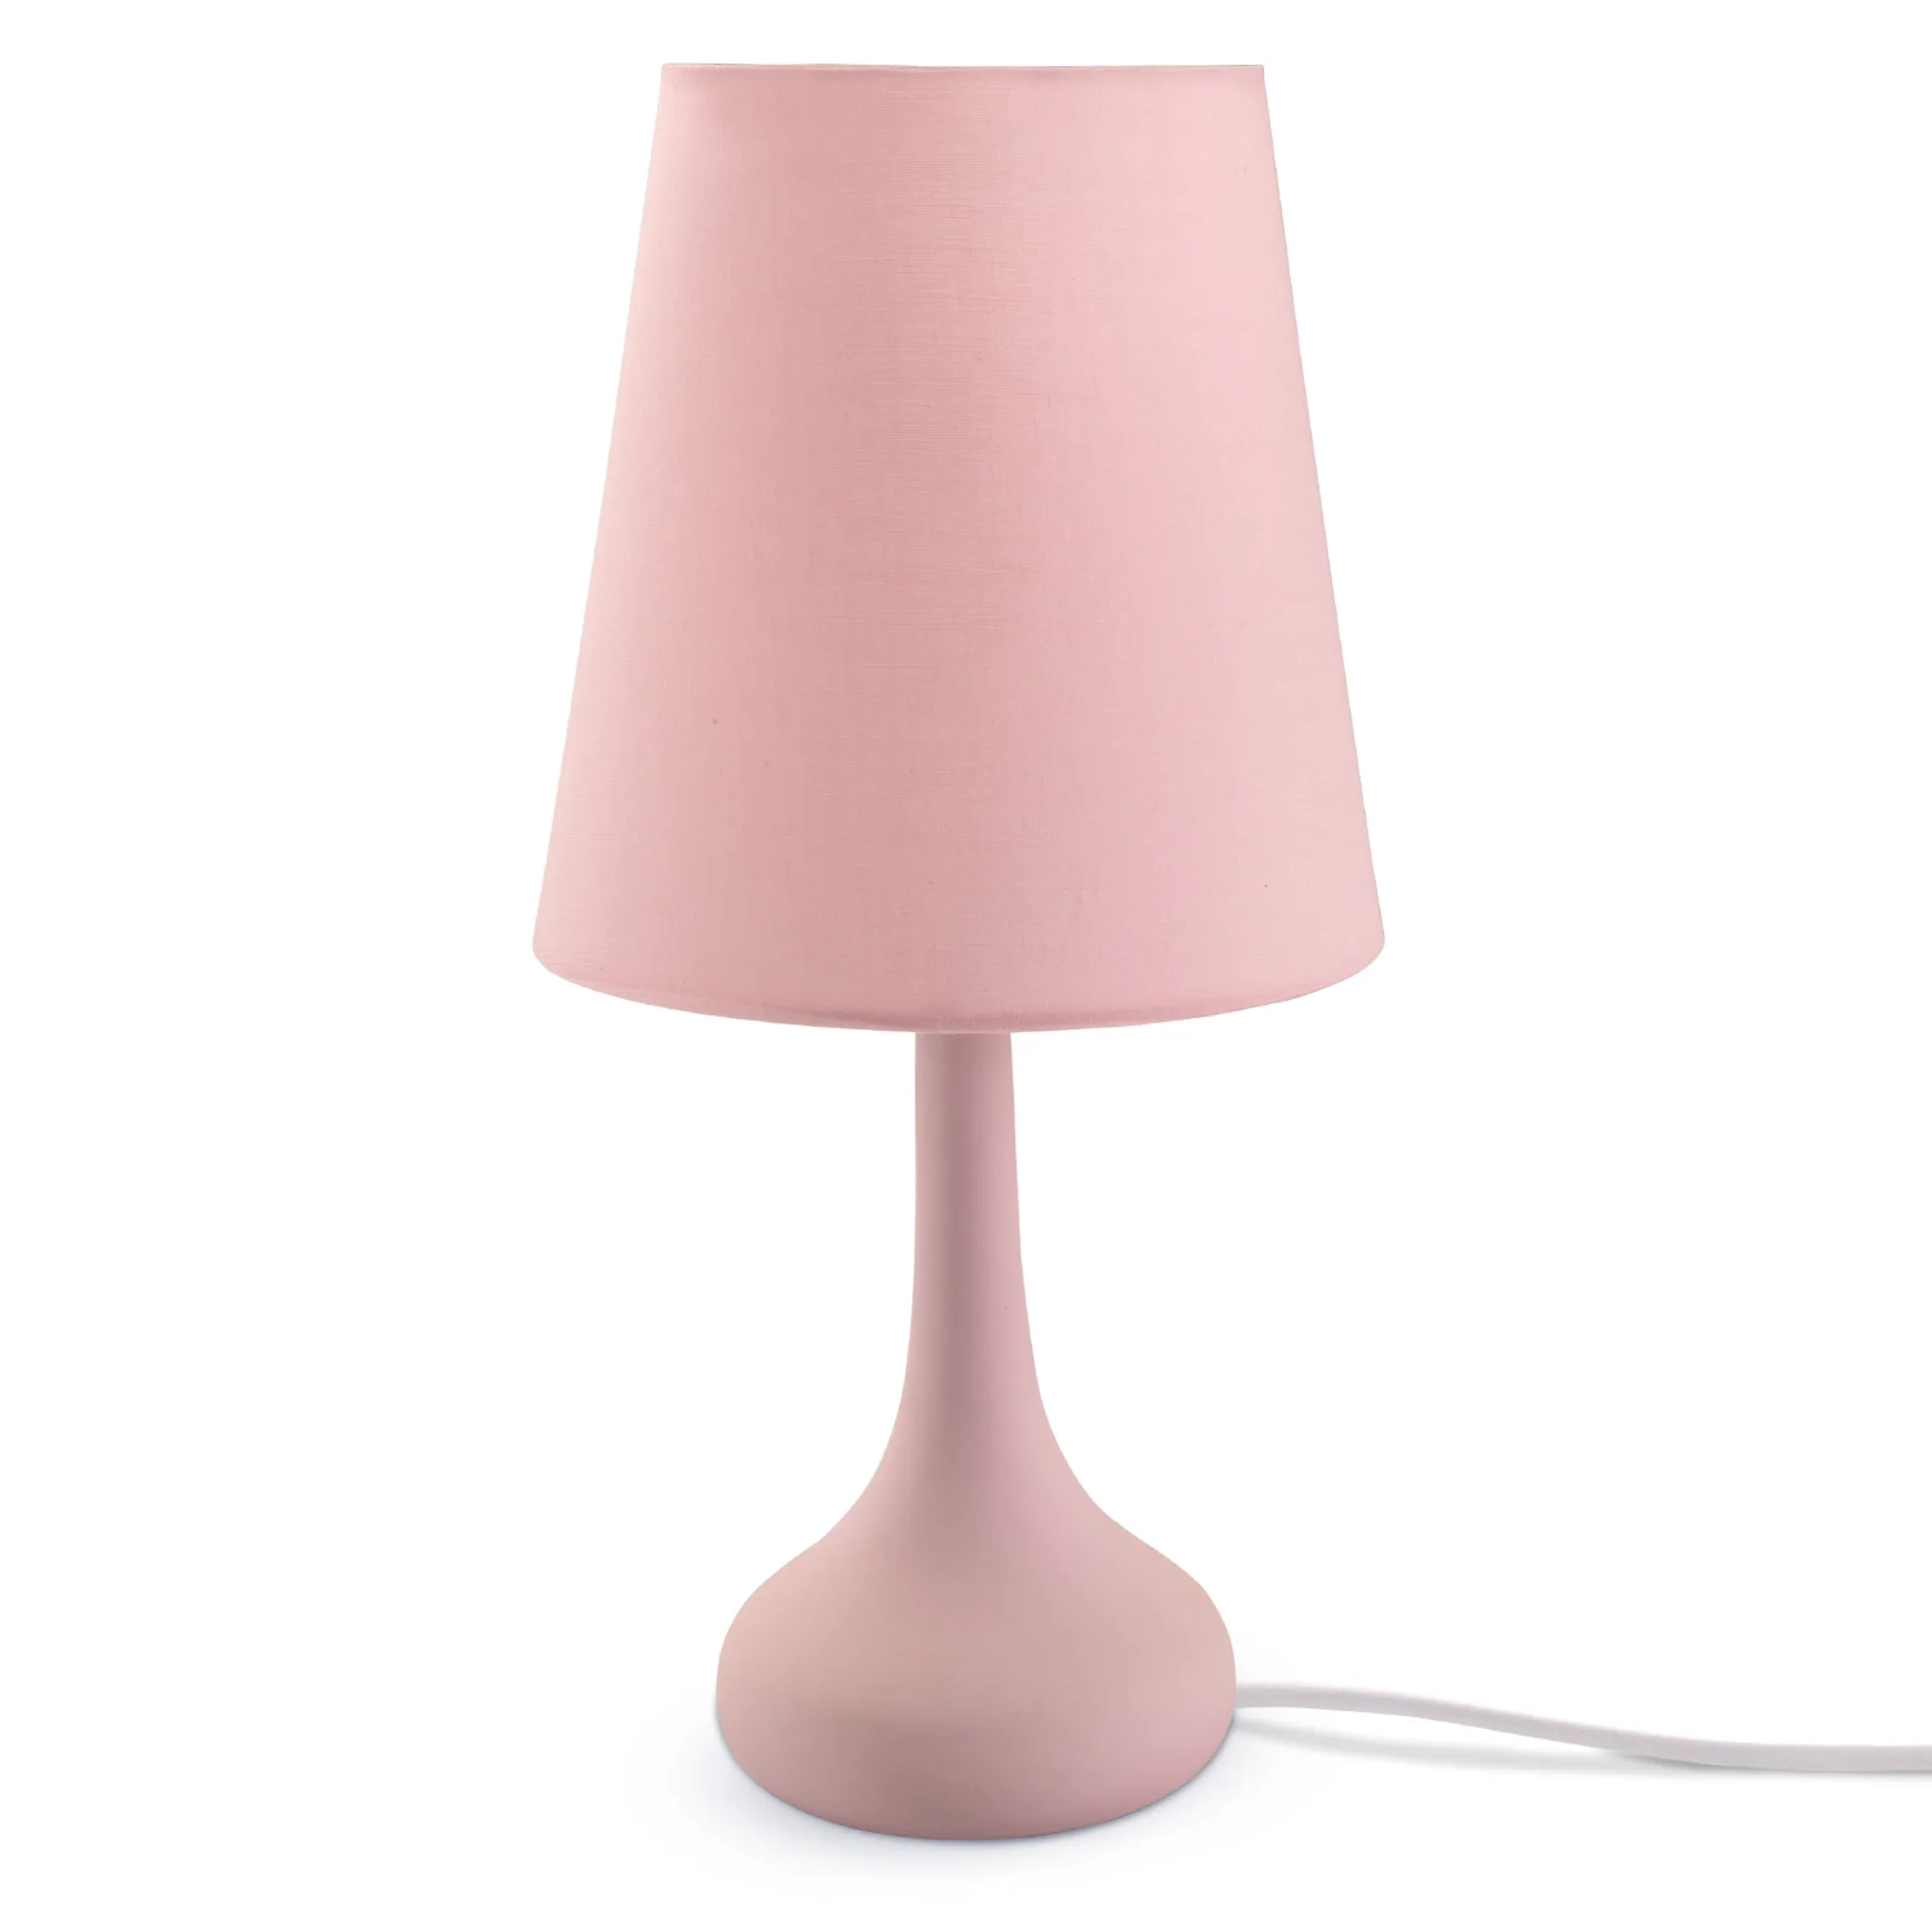 Tischlampe E14 Lampe, Tischleuchte Für Kinderzimmer u. Wohnzimmer Modern  Farbe Rosa